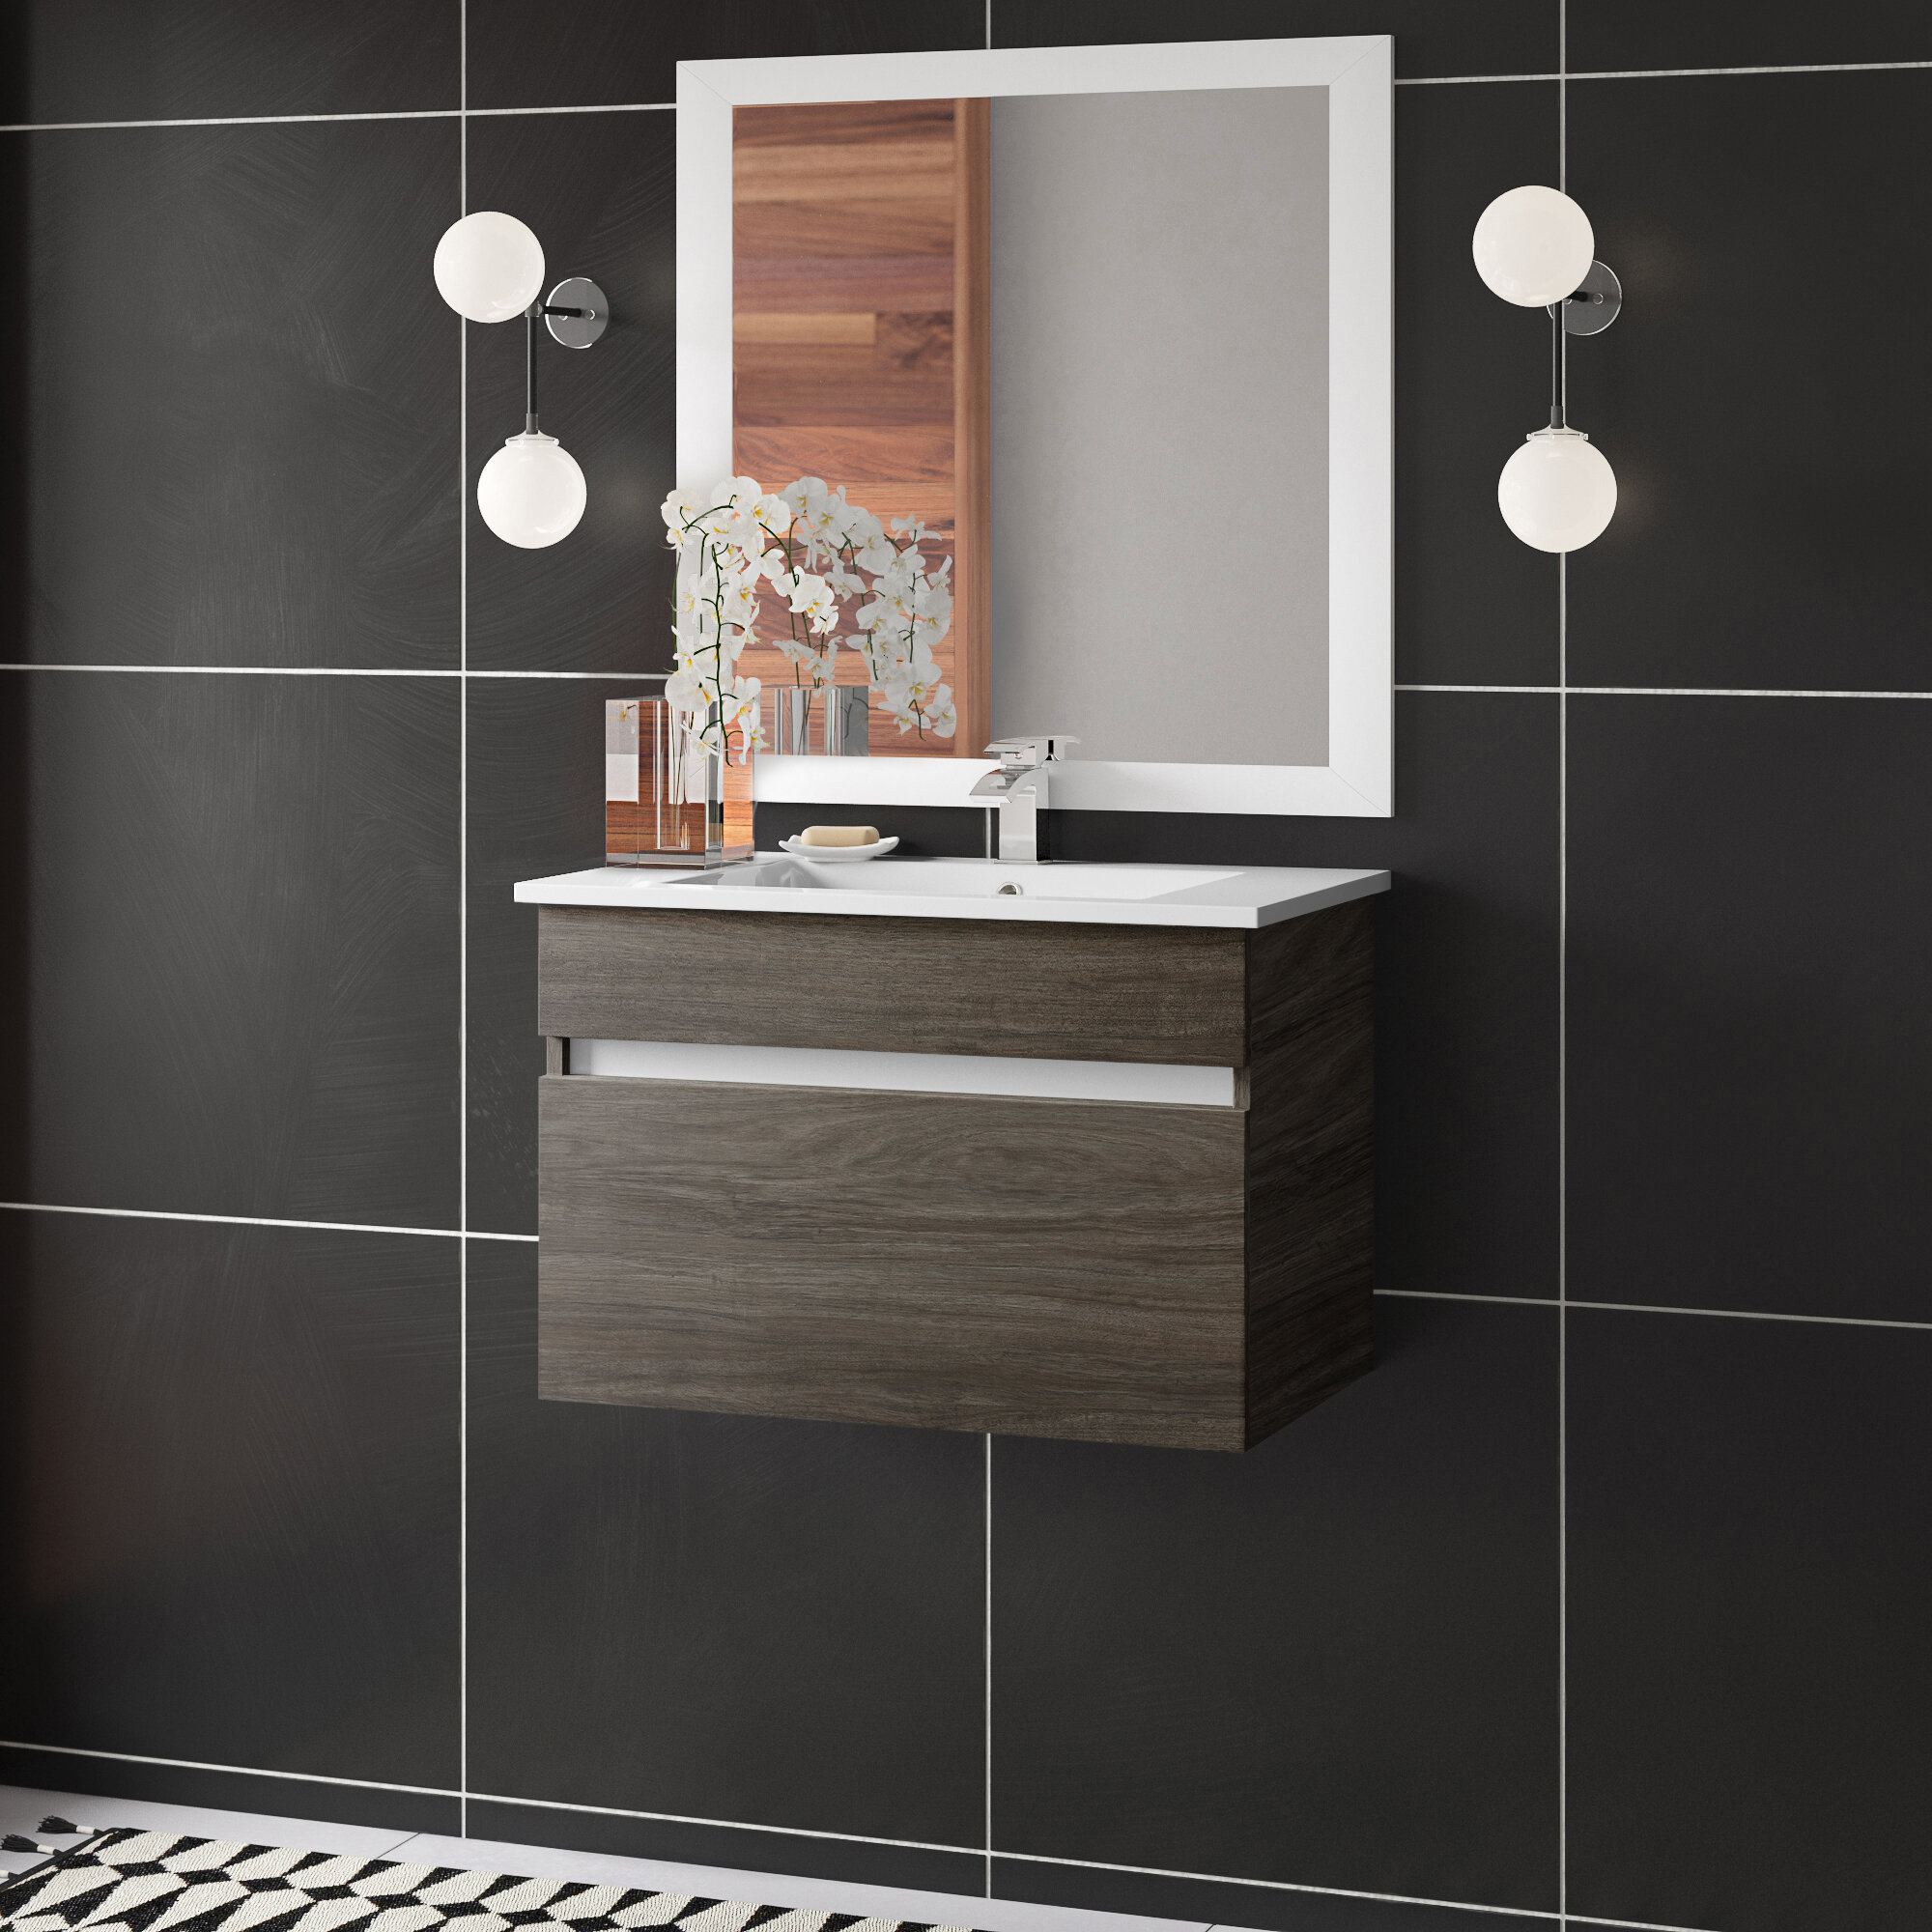 Allmodern Wood Grain Ivory Floating 30 Single Bathroom Vanity Reviews Wayfair